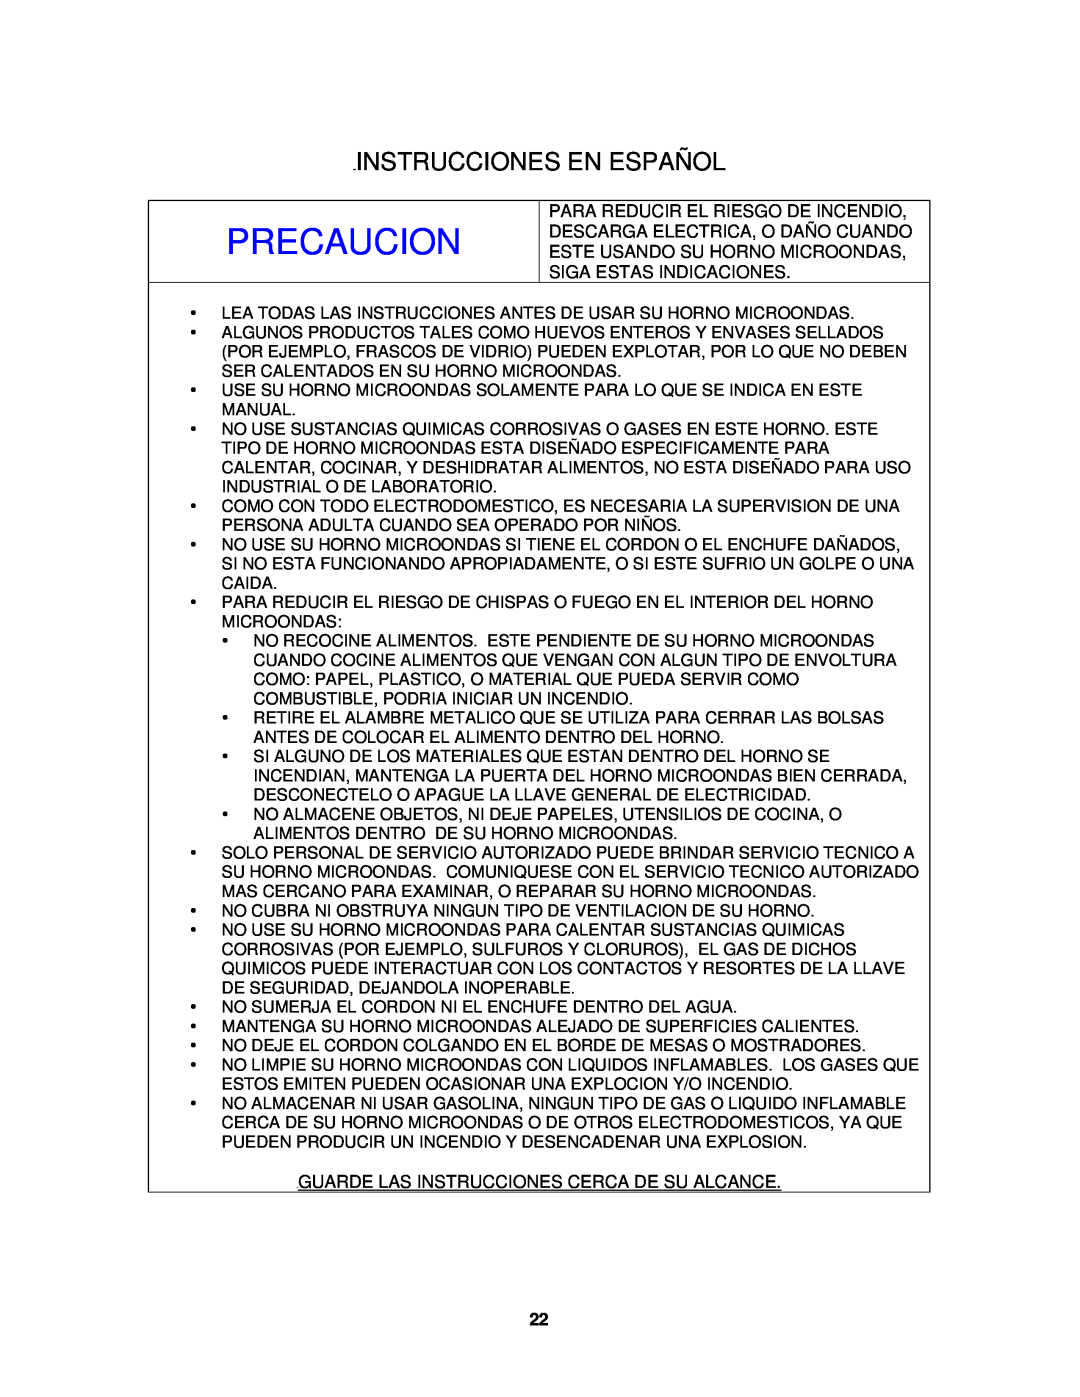 Avanti M01250TW, MO1250TW specifications Instrucciones En Español, Precaucion 